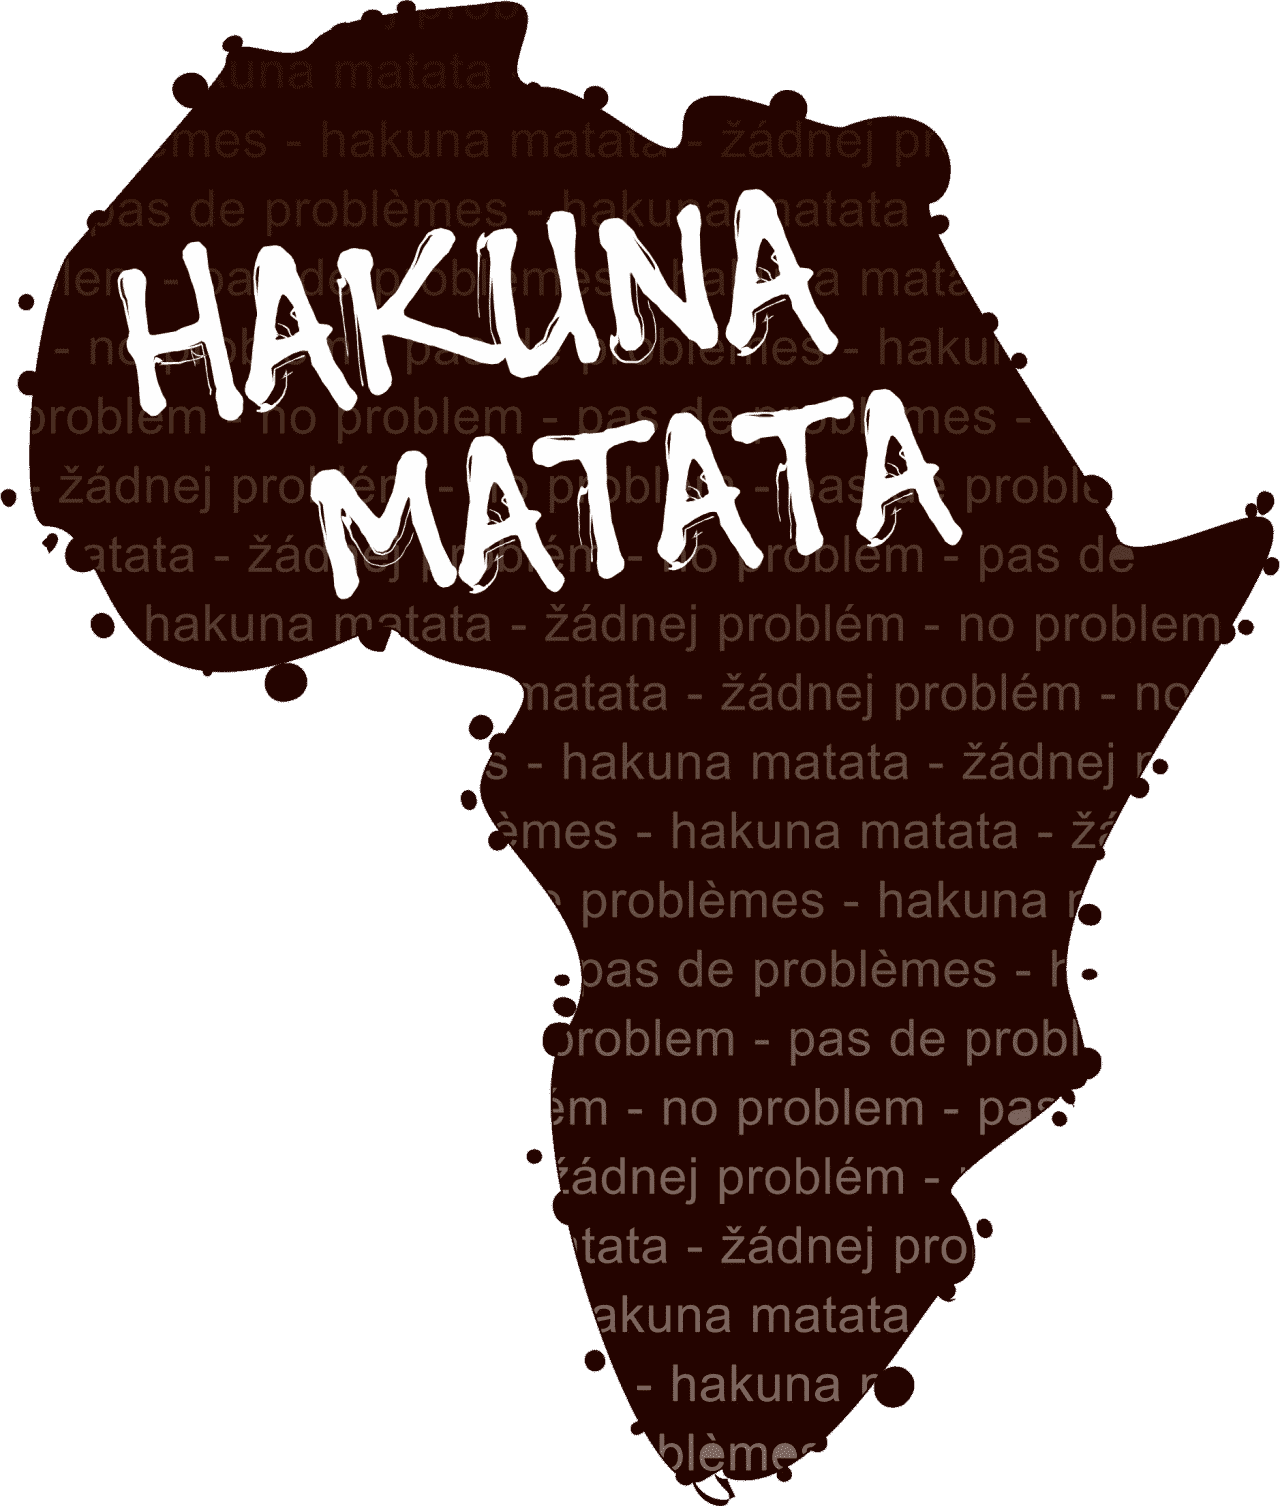 Projekt Hakuna Matata